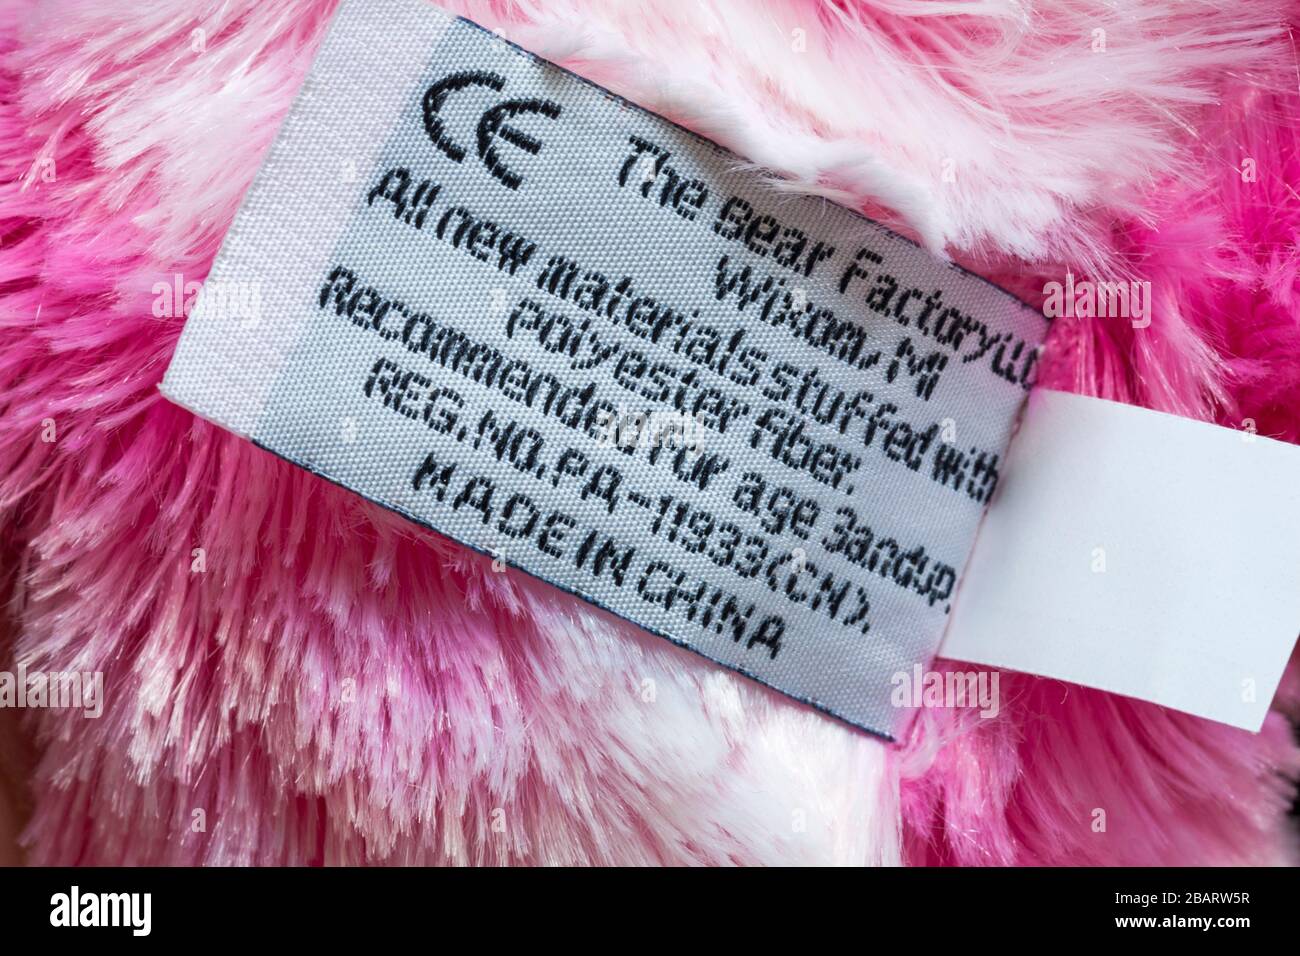 Dans l'étiquette de l'ours blanc et rose par l'ours fait en usine en Chine, tous les nouveaux matériaux farci de fibres en polyester, recommandé pour l'âge 3andup, symbole CE Banque D'Images